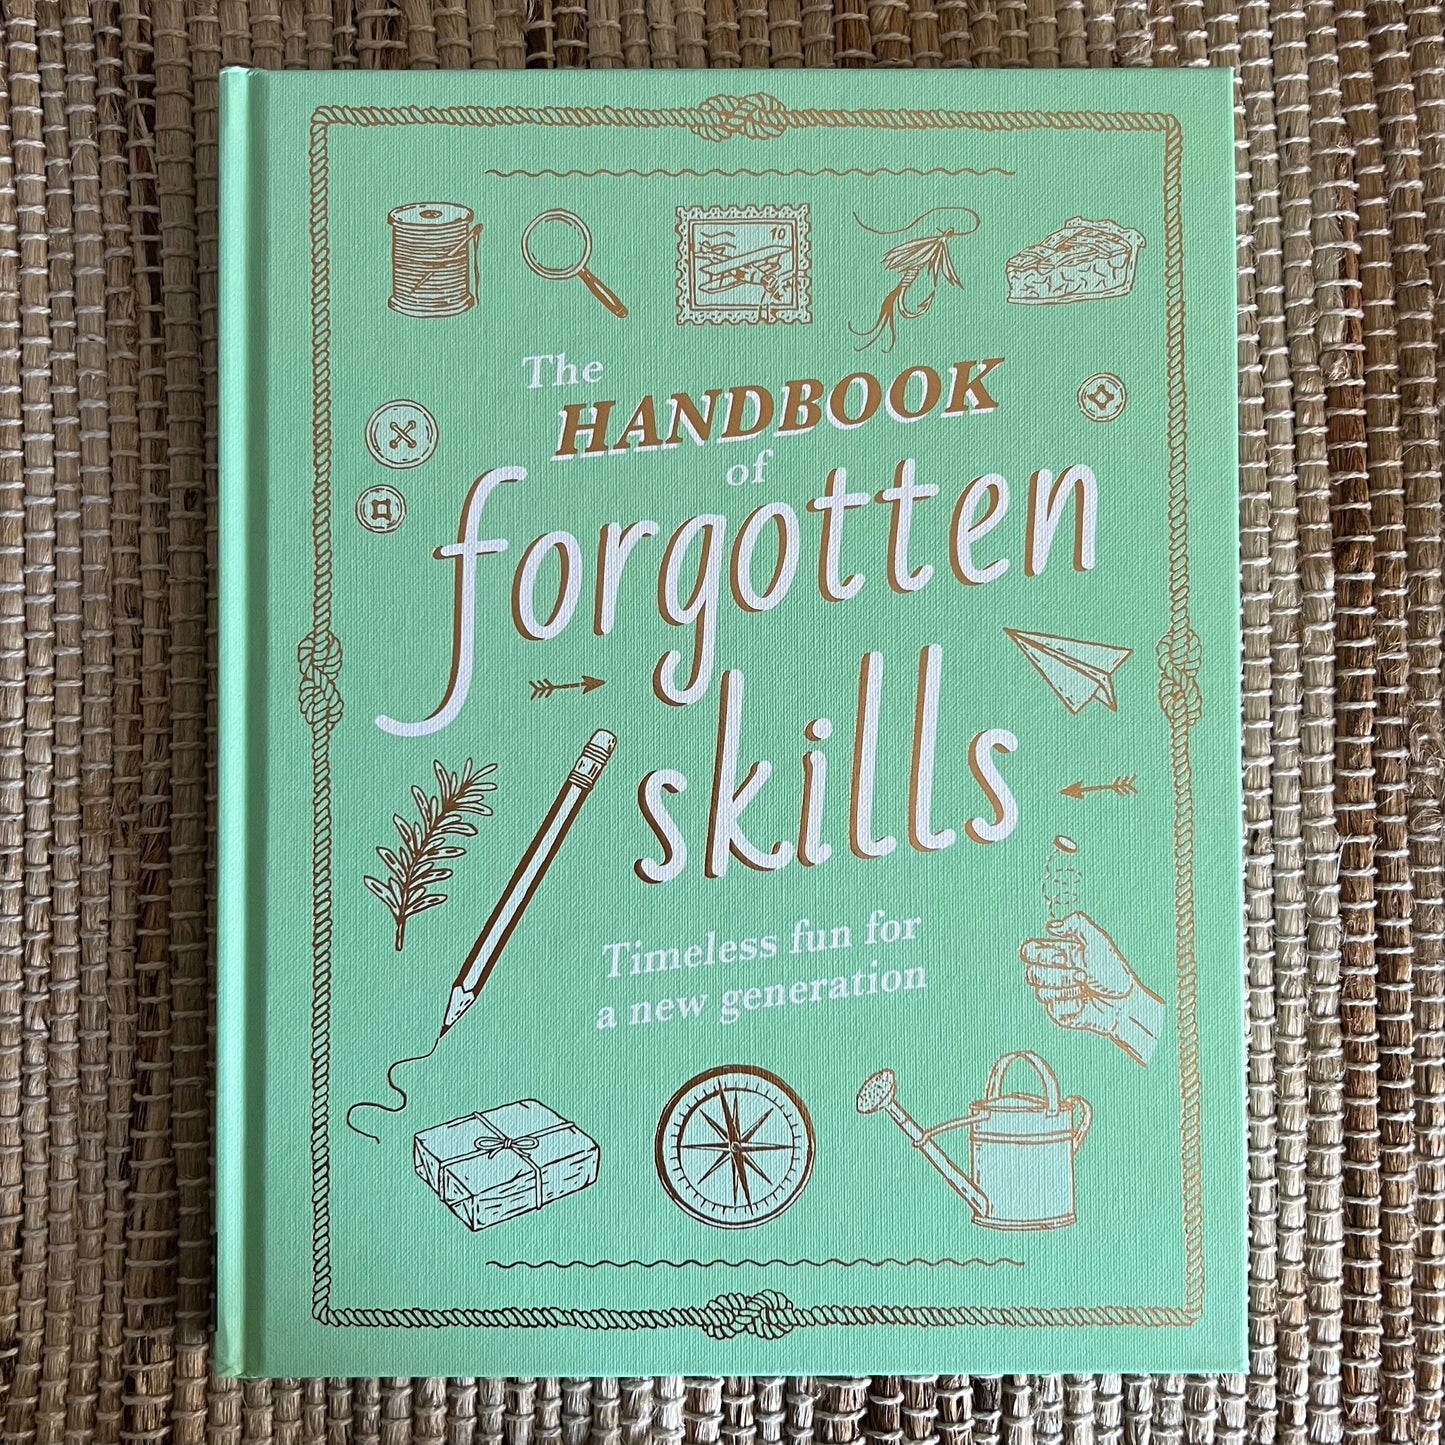 The Handbook of Handbook of Forgotten Skills